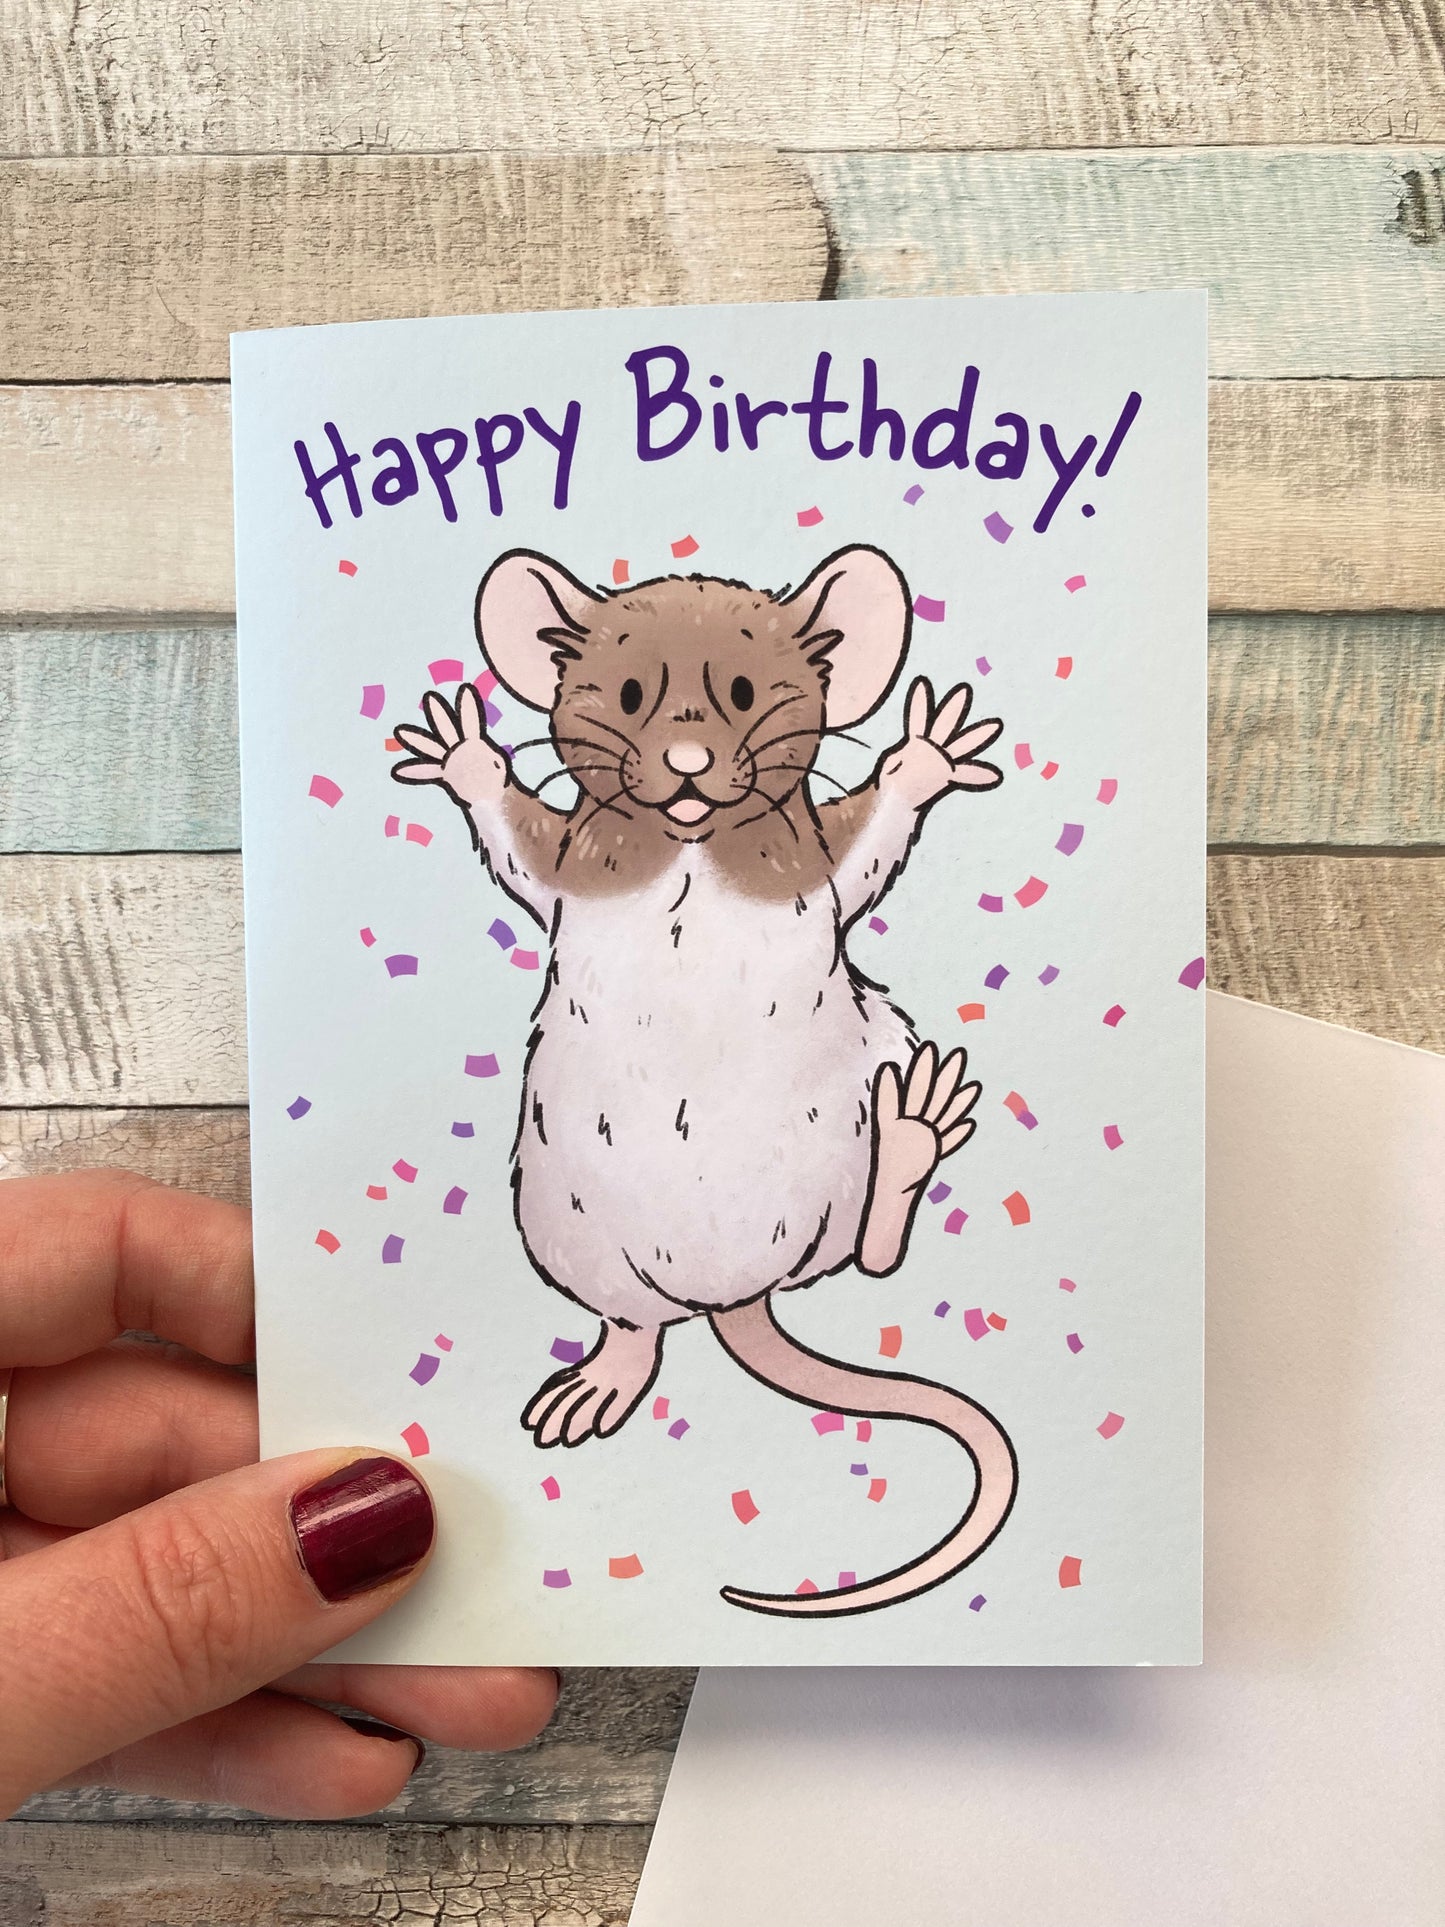 Happy Birthday | Rat Birthday Card